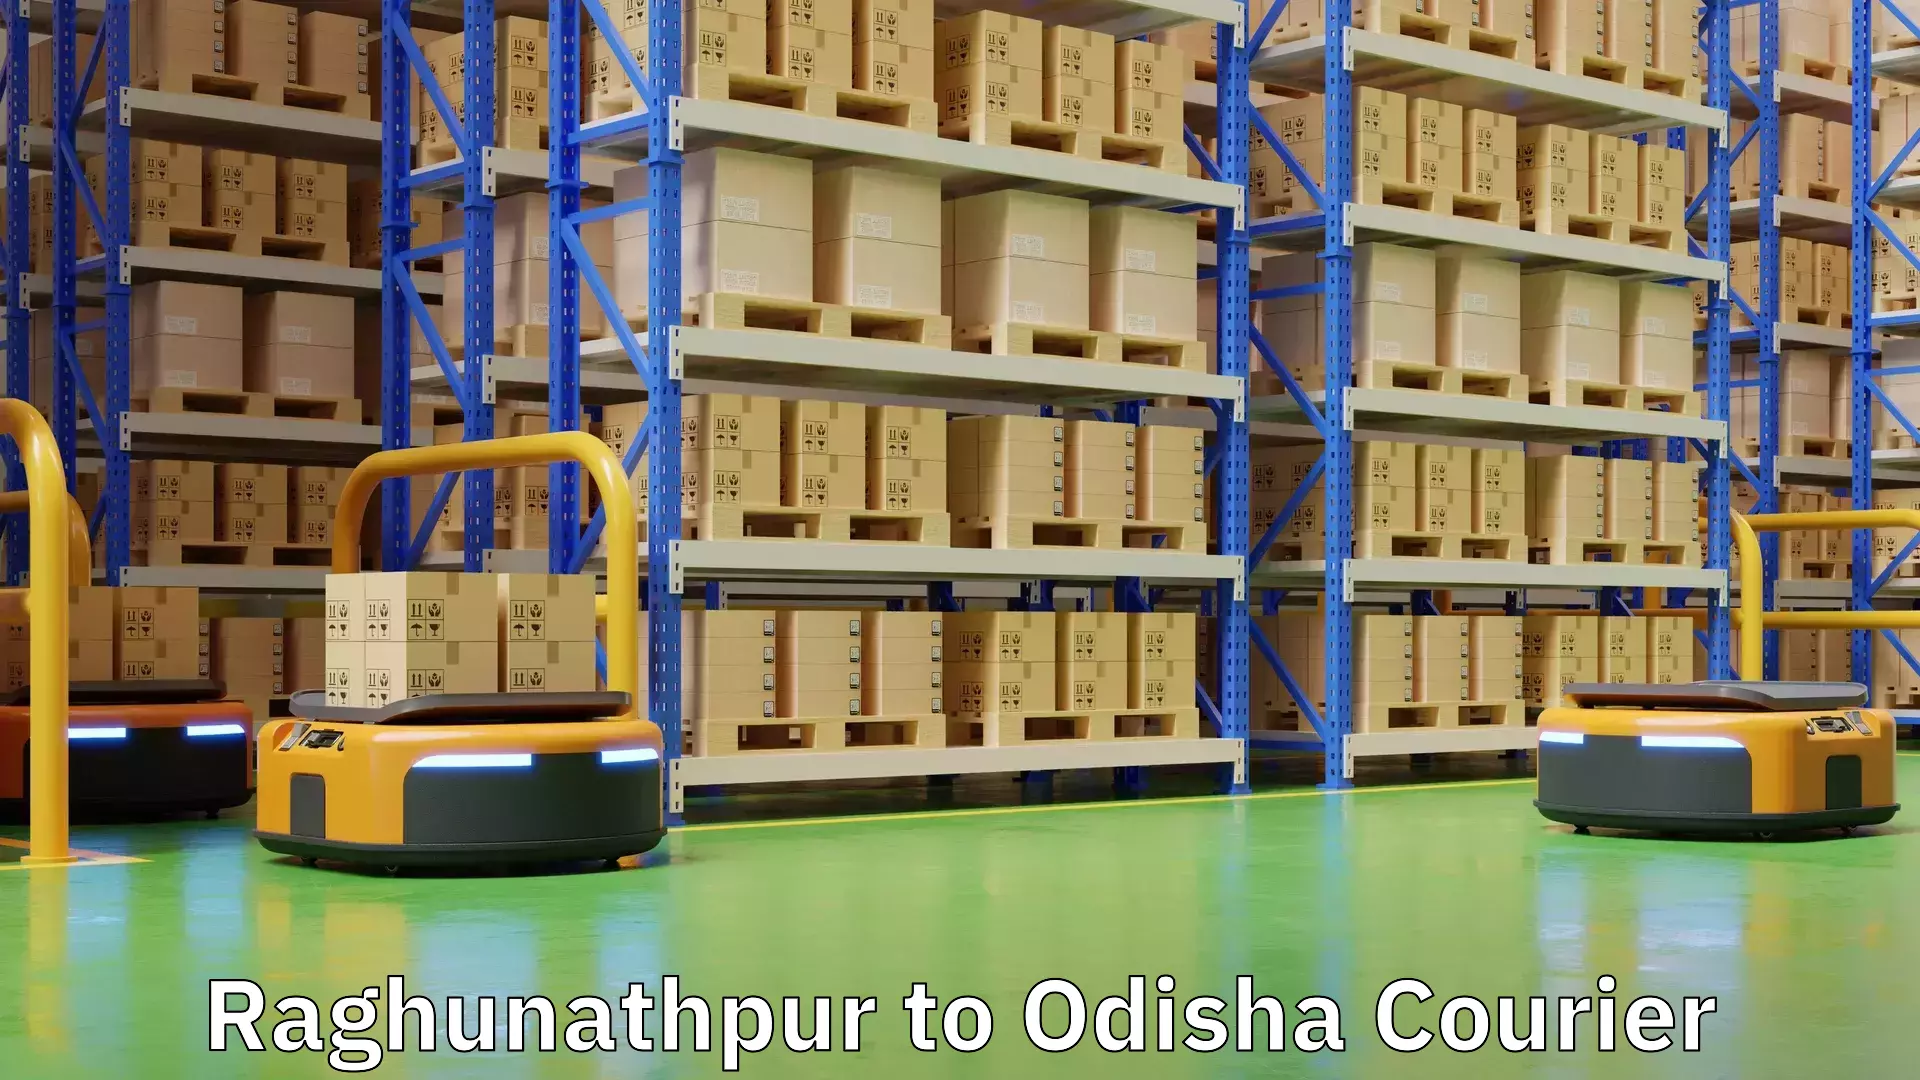 On-demand shipping options Raghunathpur to Odisha